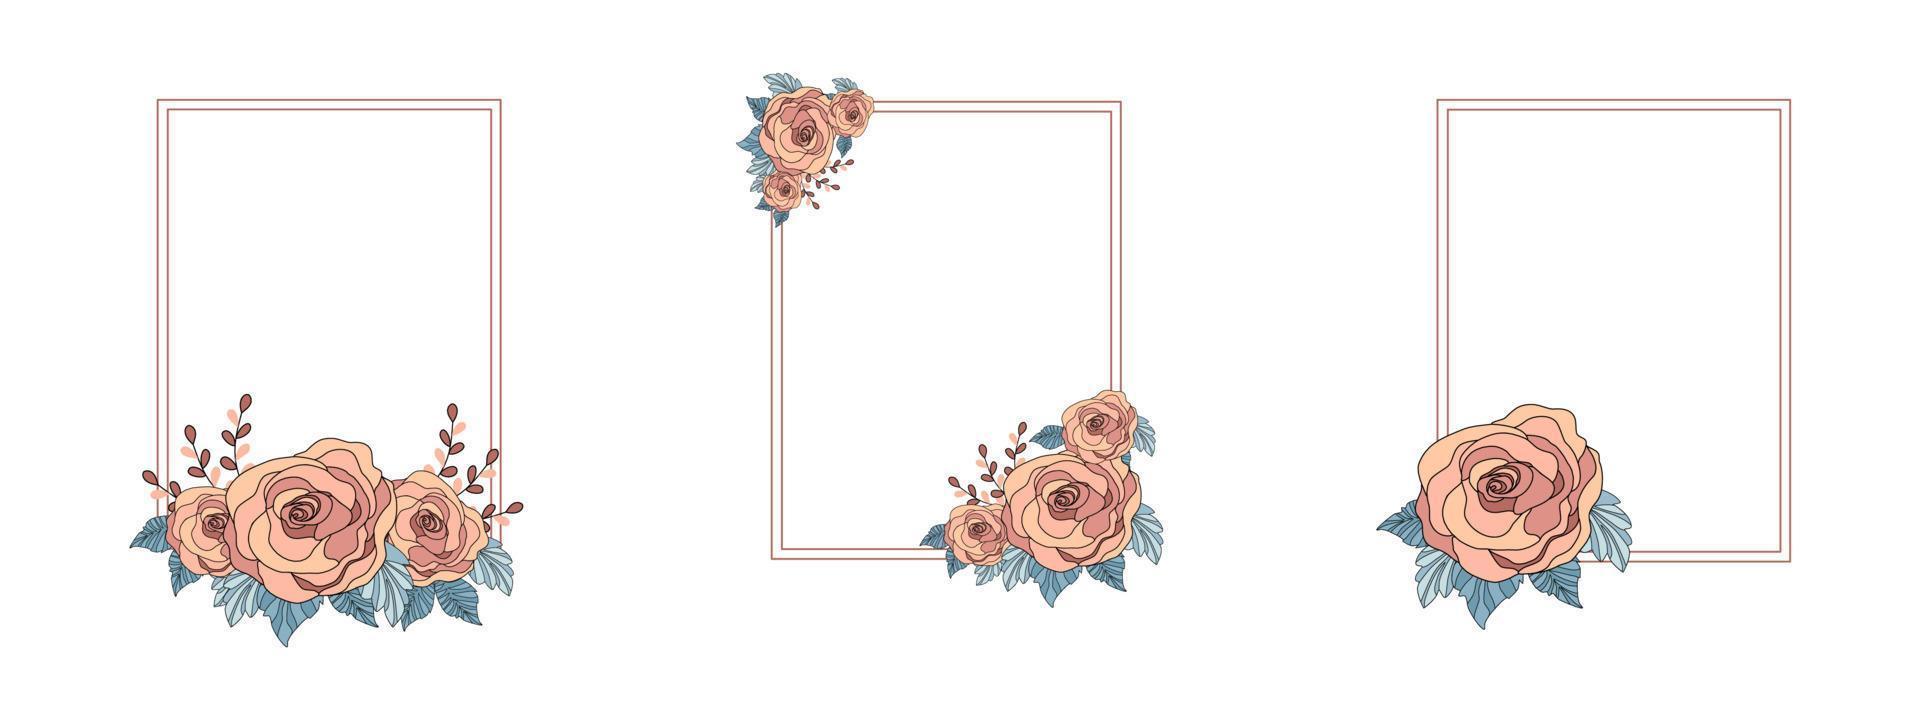 marco de patrones de rosa vintage con fondo blanco para decorar tarjetas, bodas, día de san valentín, postales, invitaciones, marcos, etc. vector